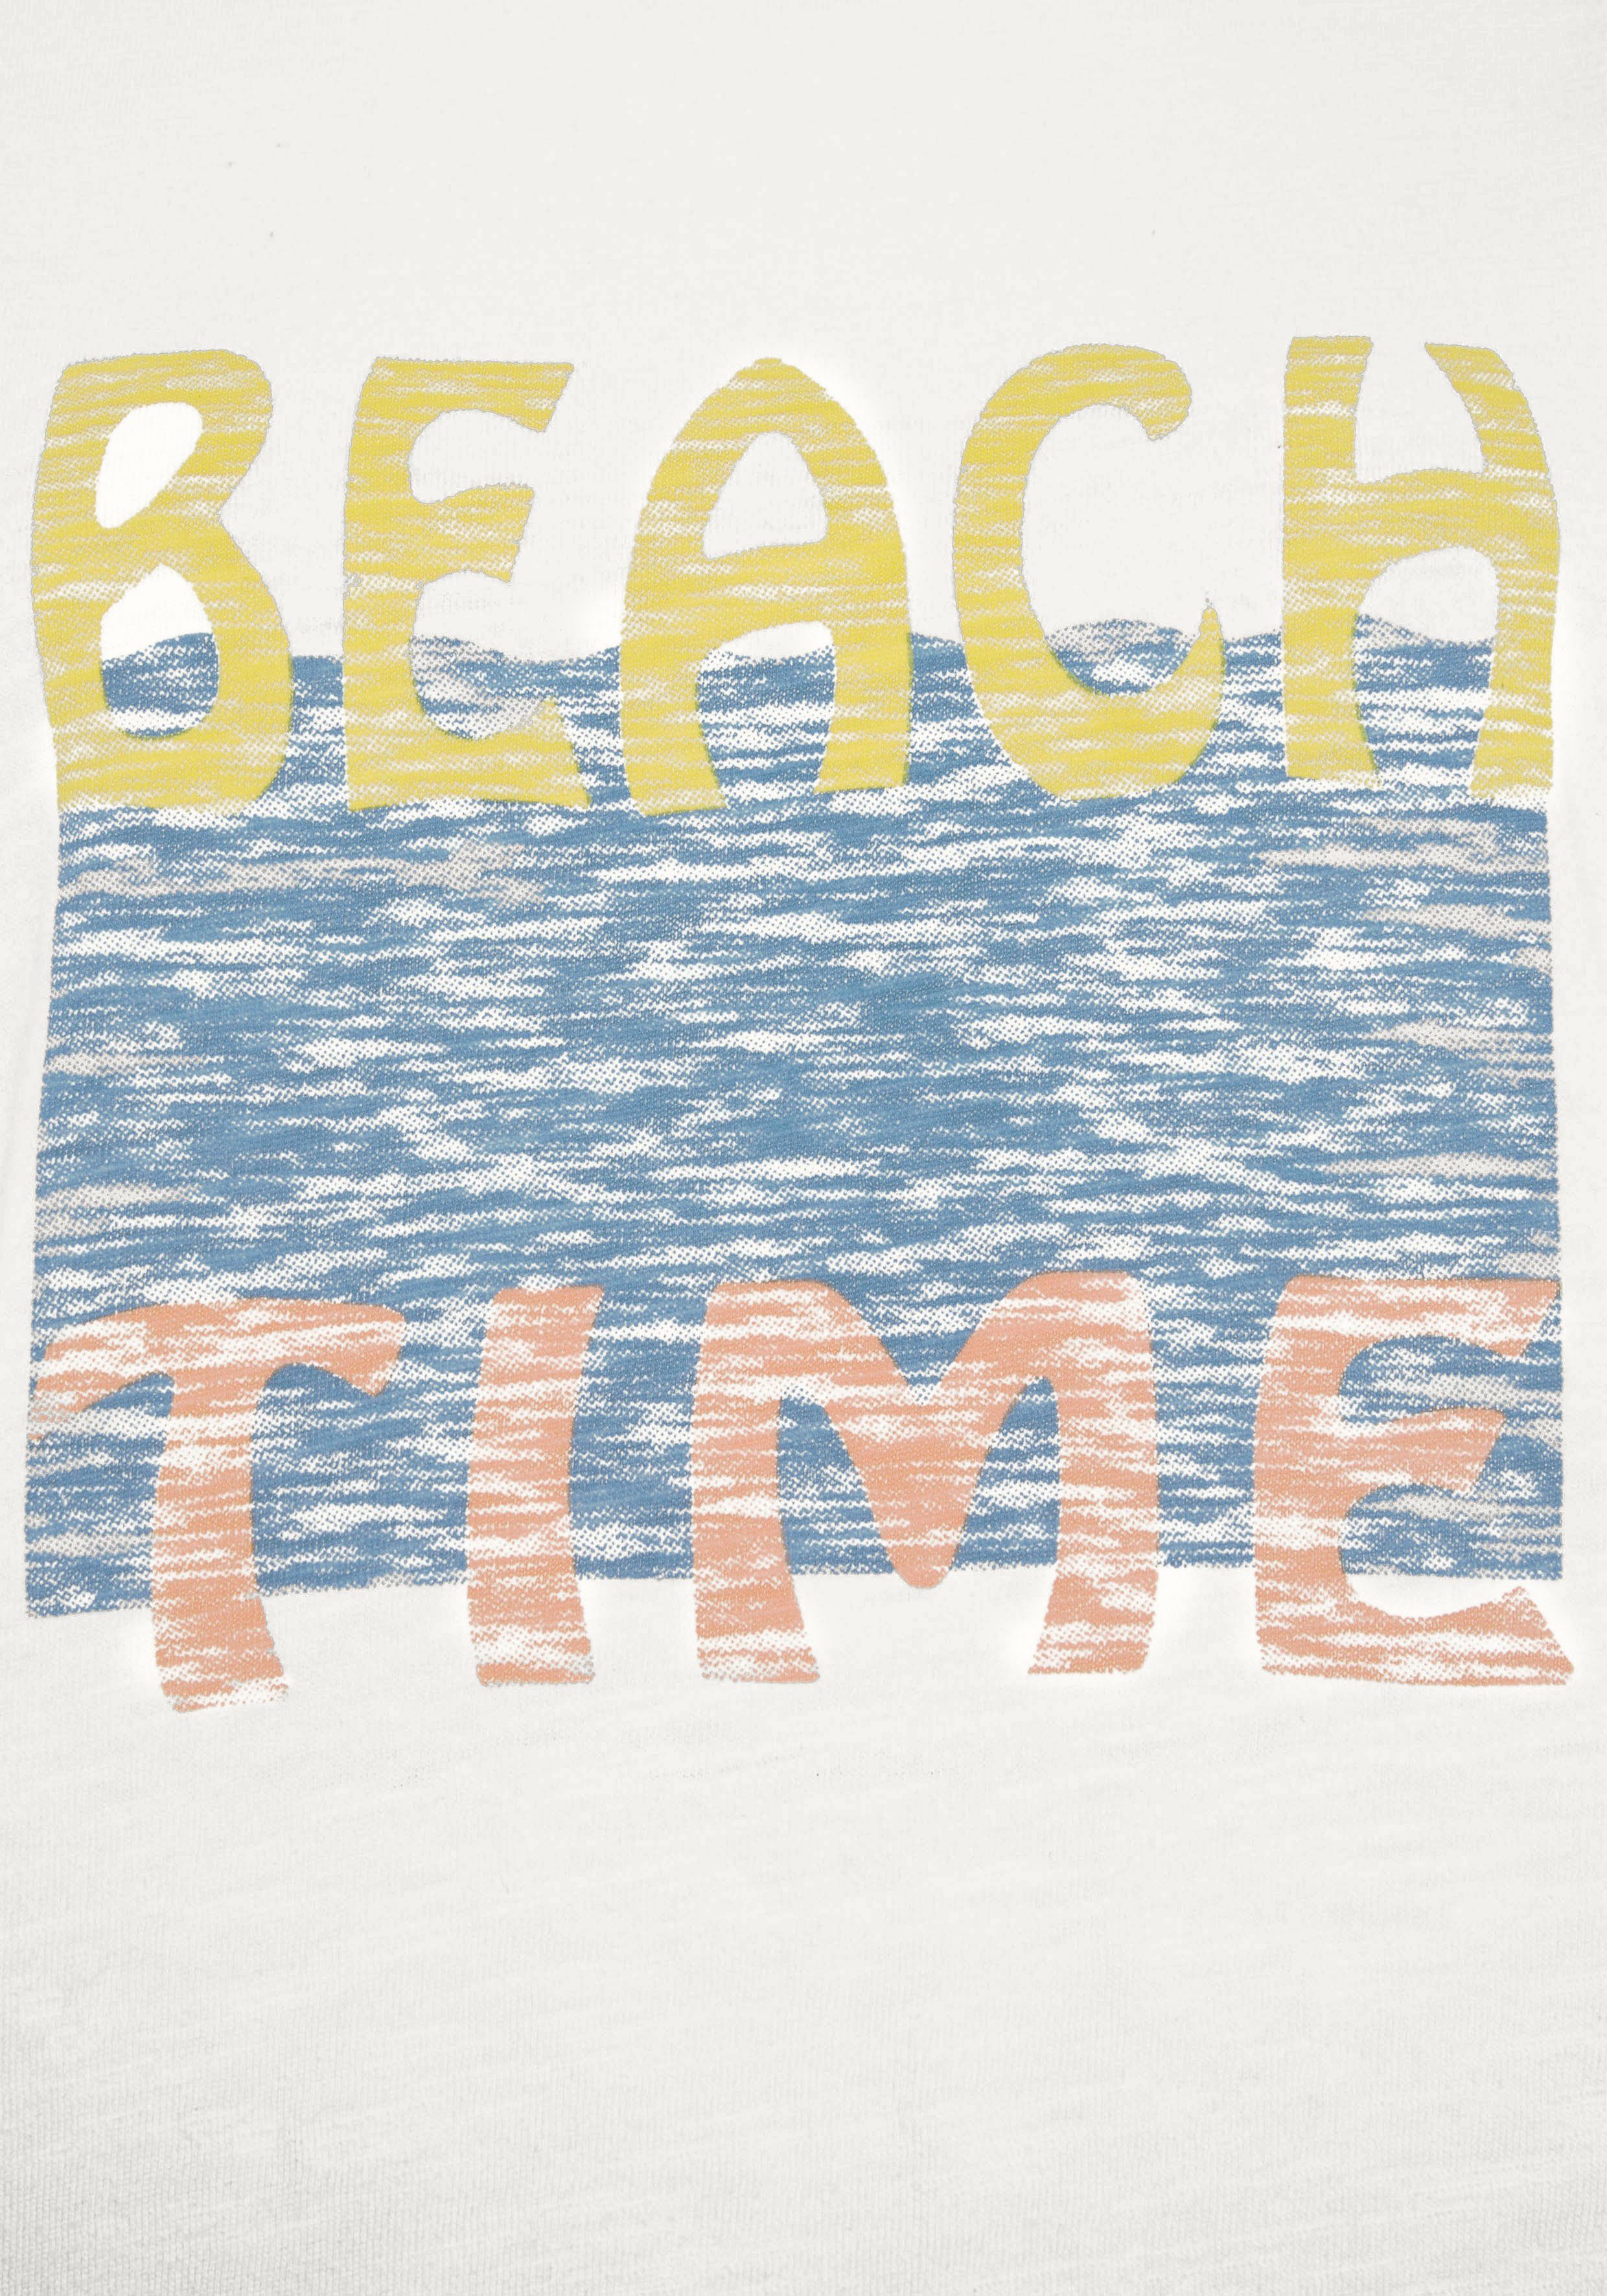 verschiedenen T-Shirt (Packung, mit zwei Drucken 2-tlg) Beachtime